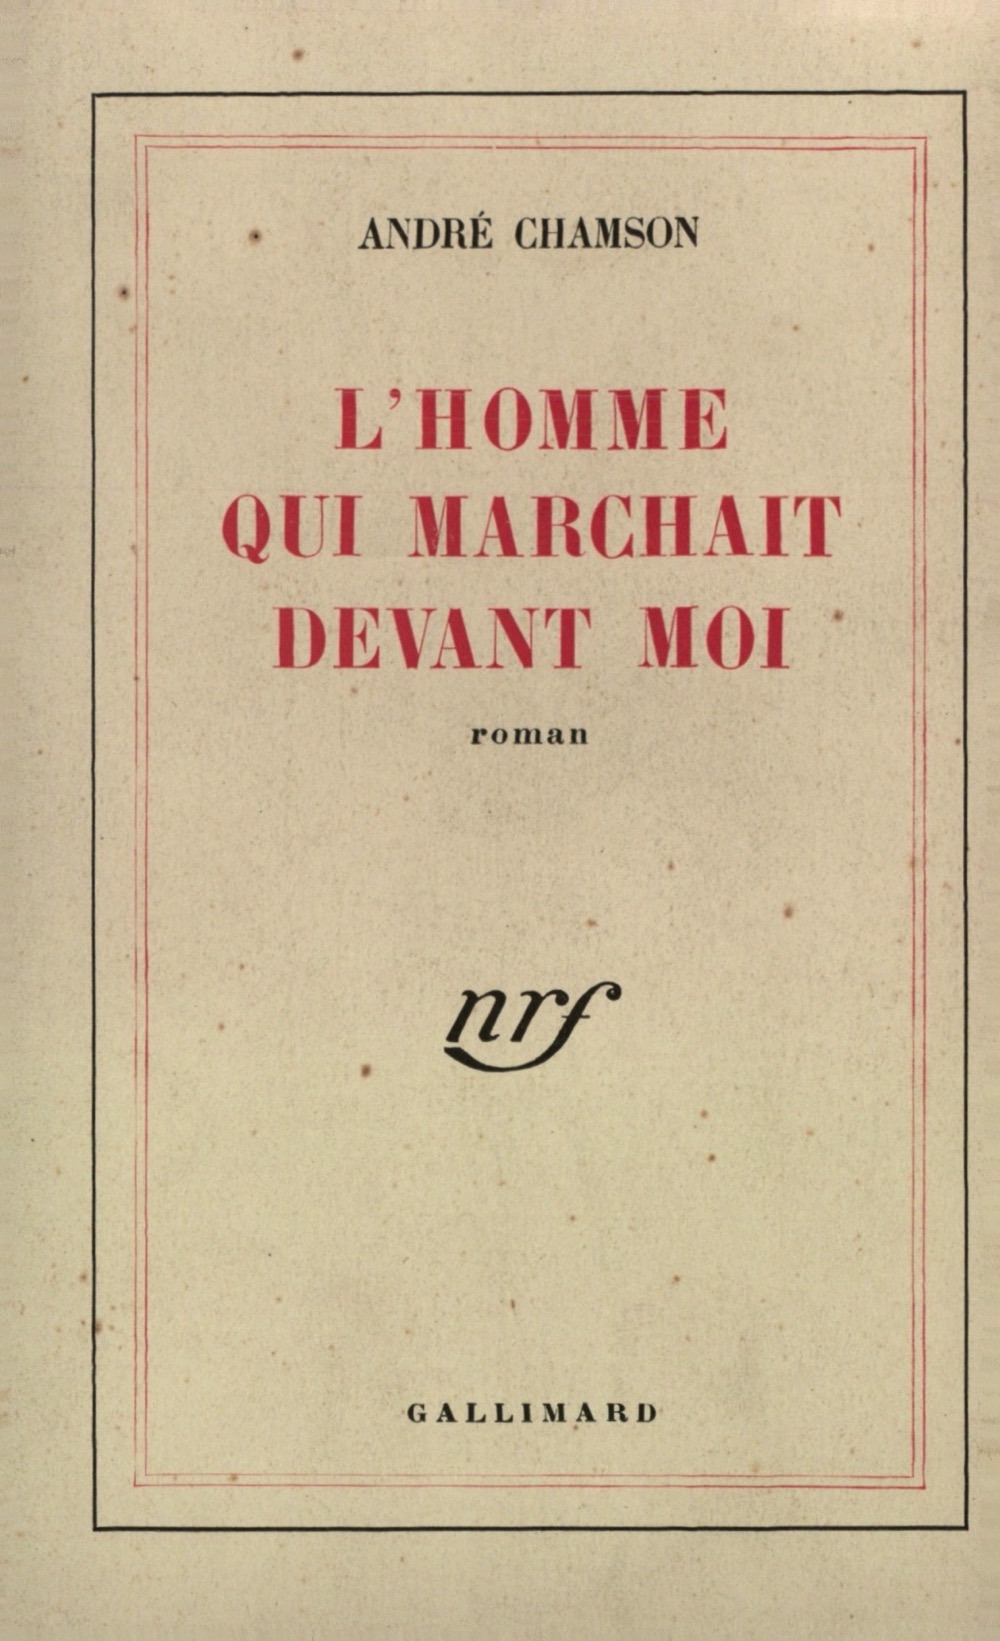 L'homme qui marchait devant moi - Gallimard 1947